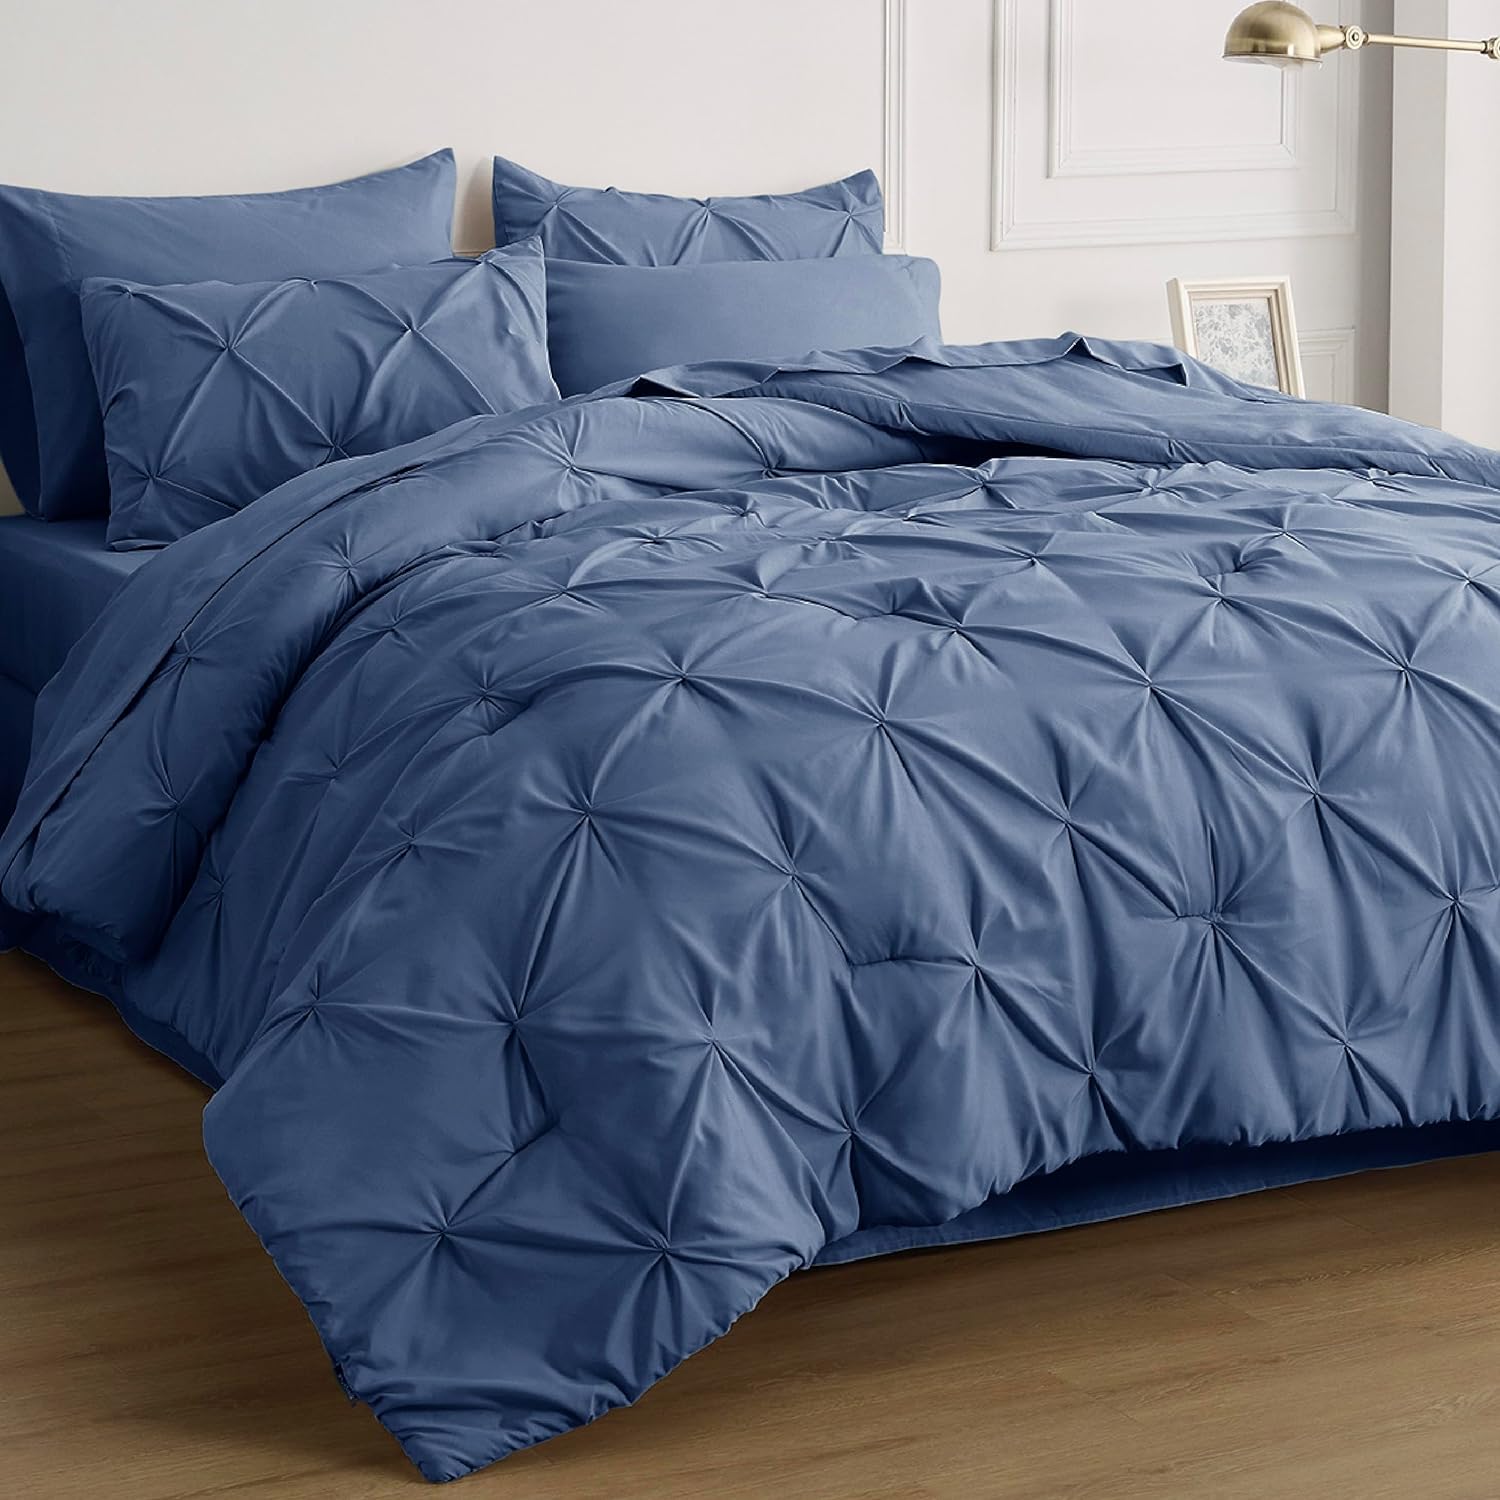 Bedsure Queen Comforter Set - 7 Pieces Comforters Queen Size Grey, Pintuck Beddi